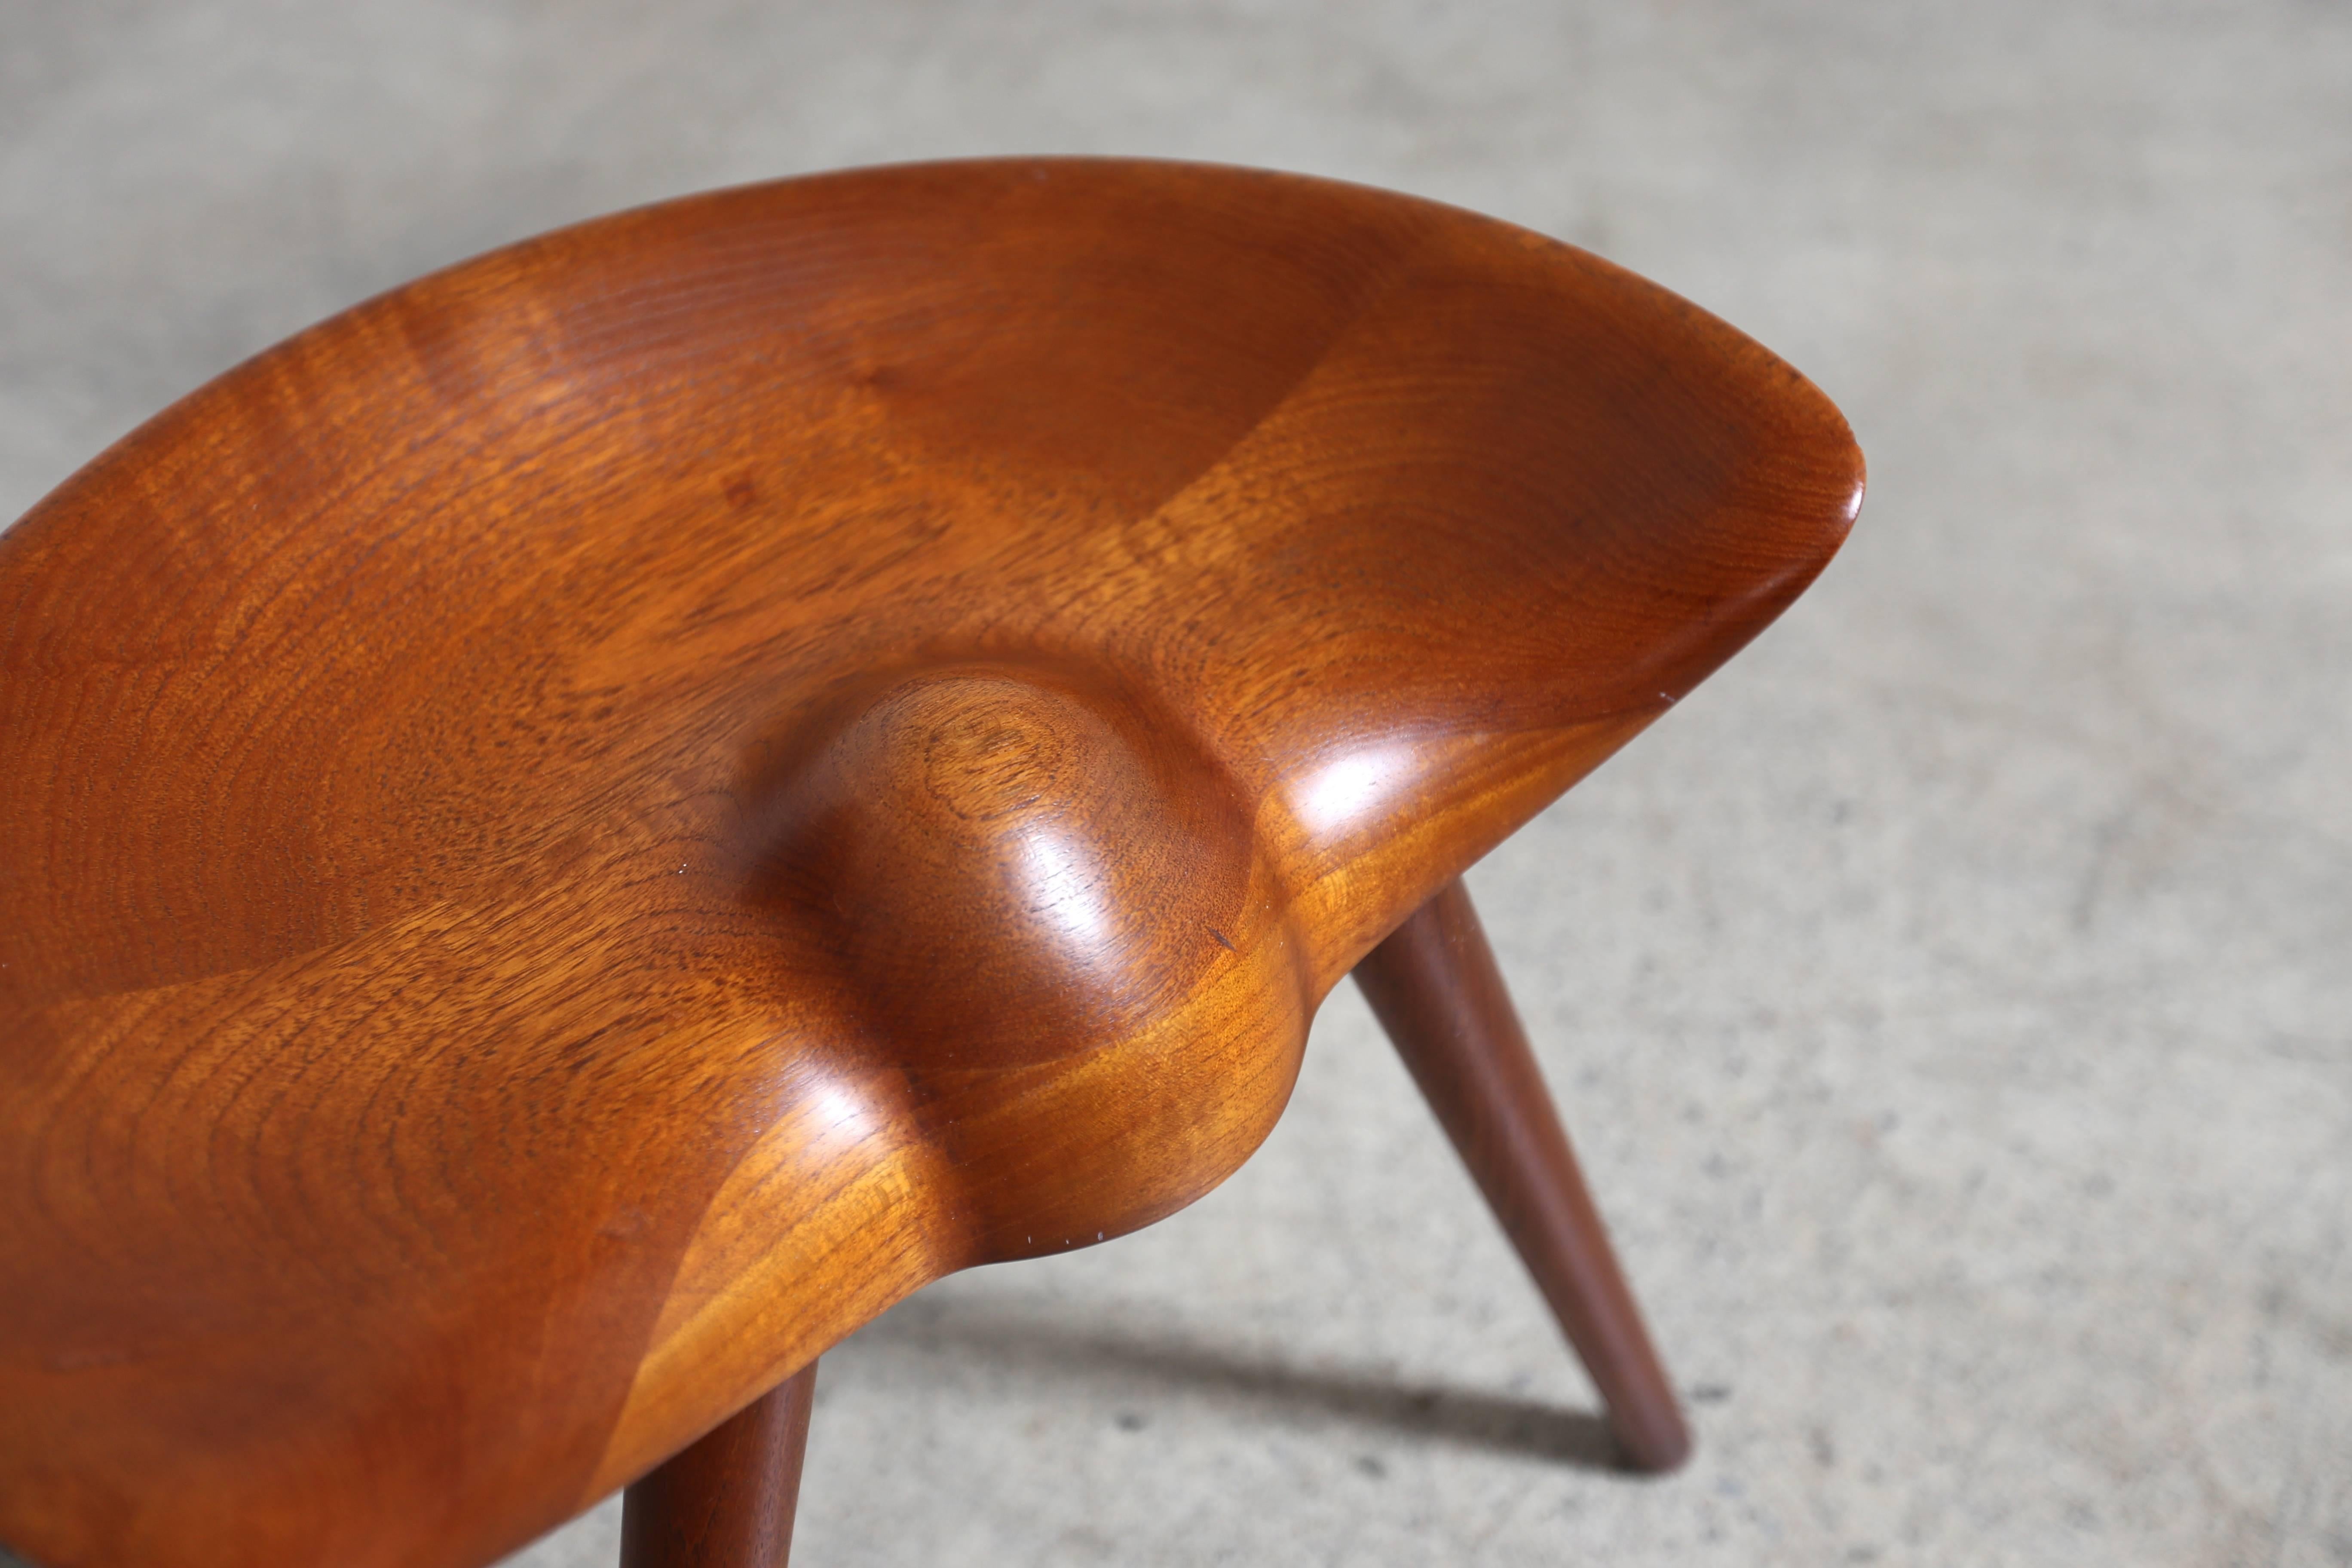 Sculpted teak stool by Mogens Lassen for K. Thomsen.